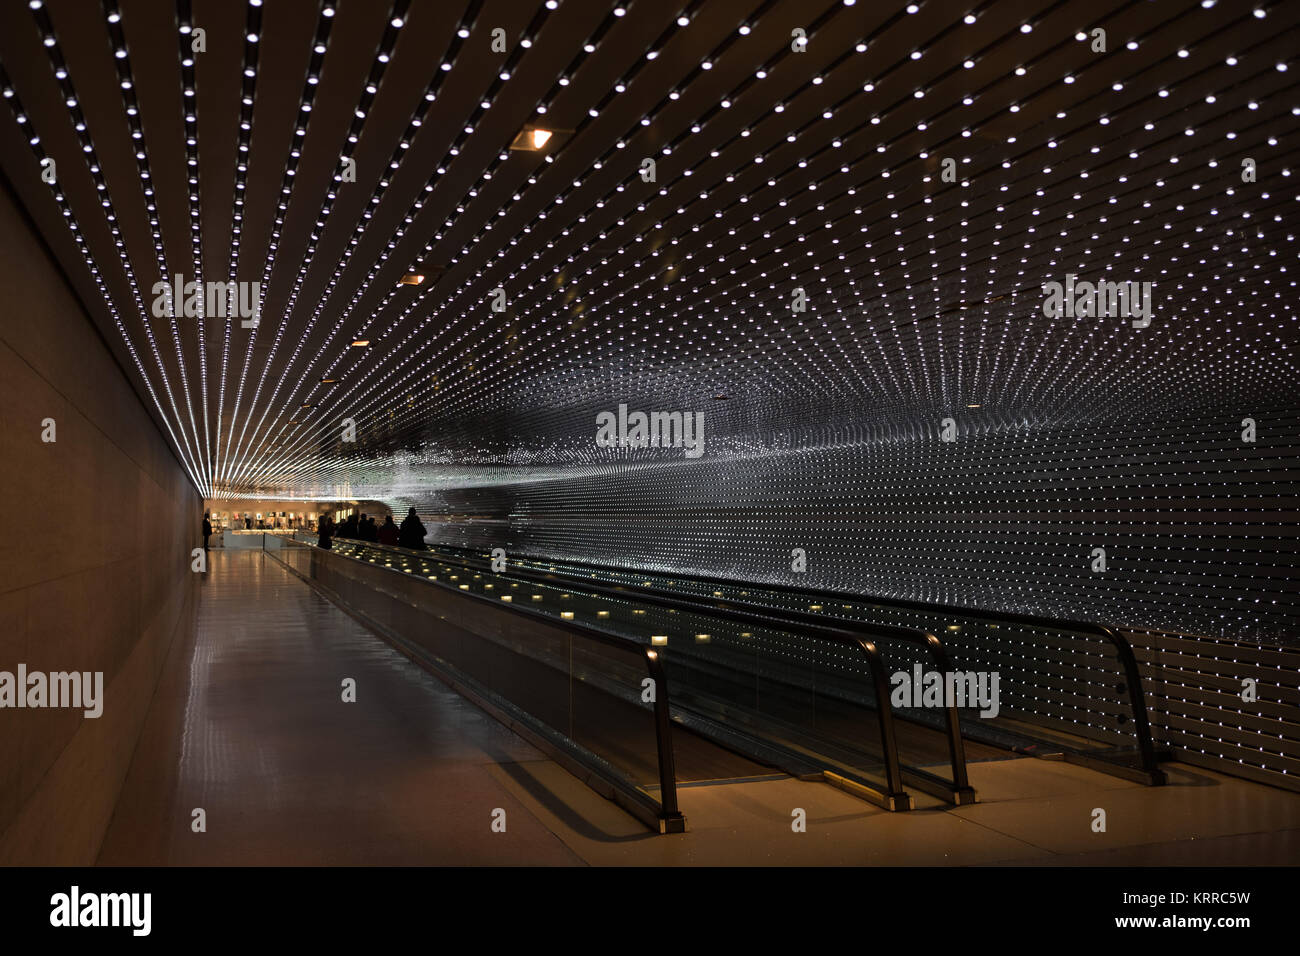 WASHINGTON DC, USA – Multiverse by Leo Villareal ist eine faszinierende LED-Lichtinstallation in der National Gallery of Art in Washington DC. Das dynamische Kunstwerk besteht aus 41.000 LED-Knoten, die ein fesselndes visuelles Erlebnis schaffen, das das Konzept des Multiversums durch Licht, Bewegung und Technologie erforscht. Stockfoto